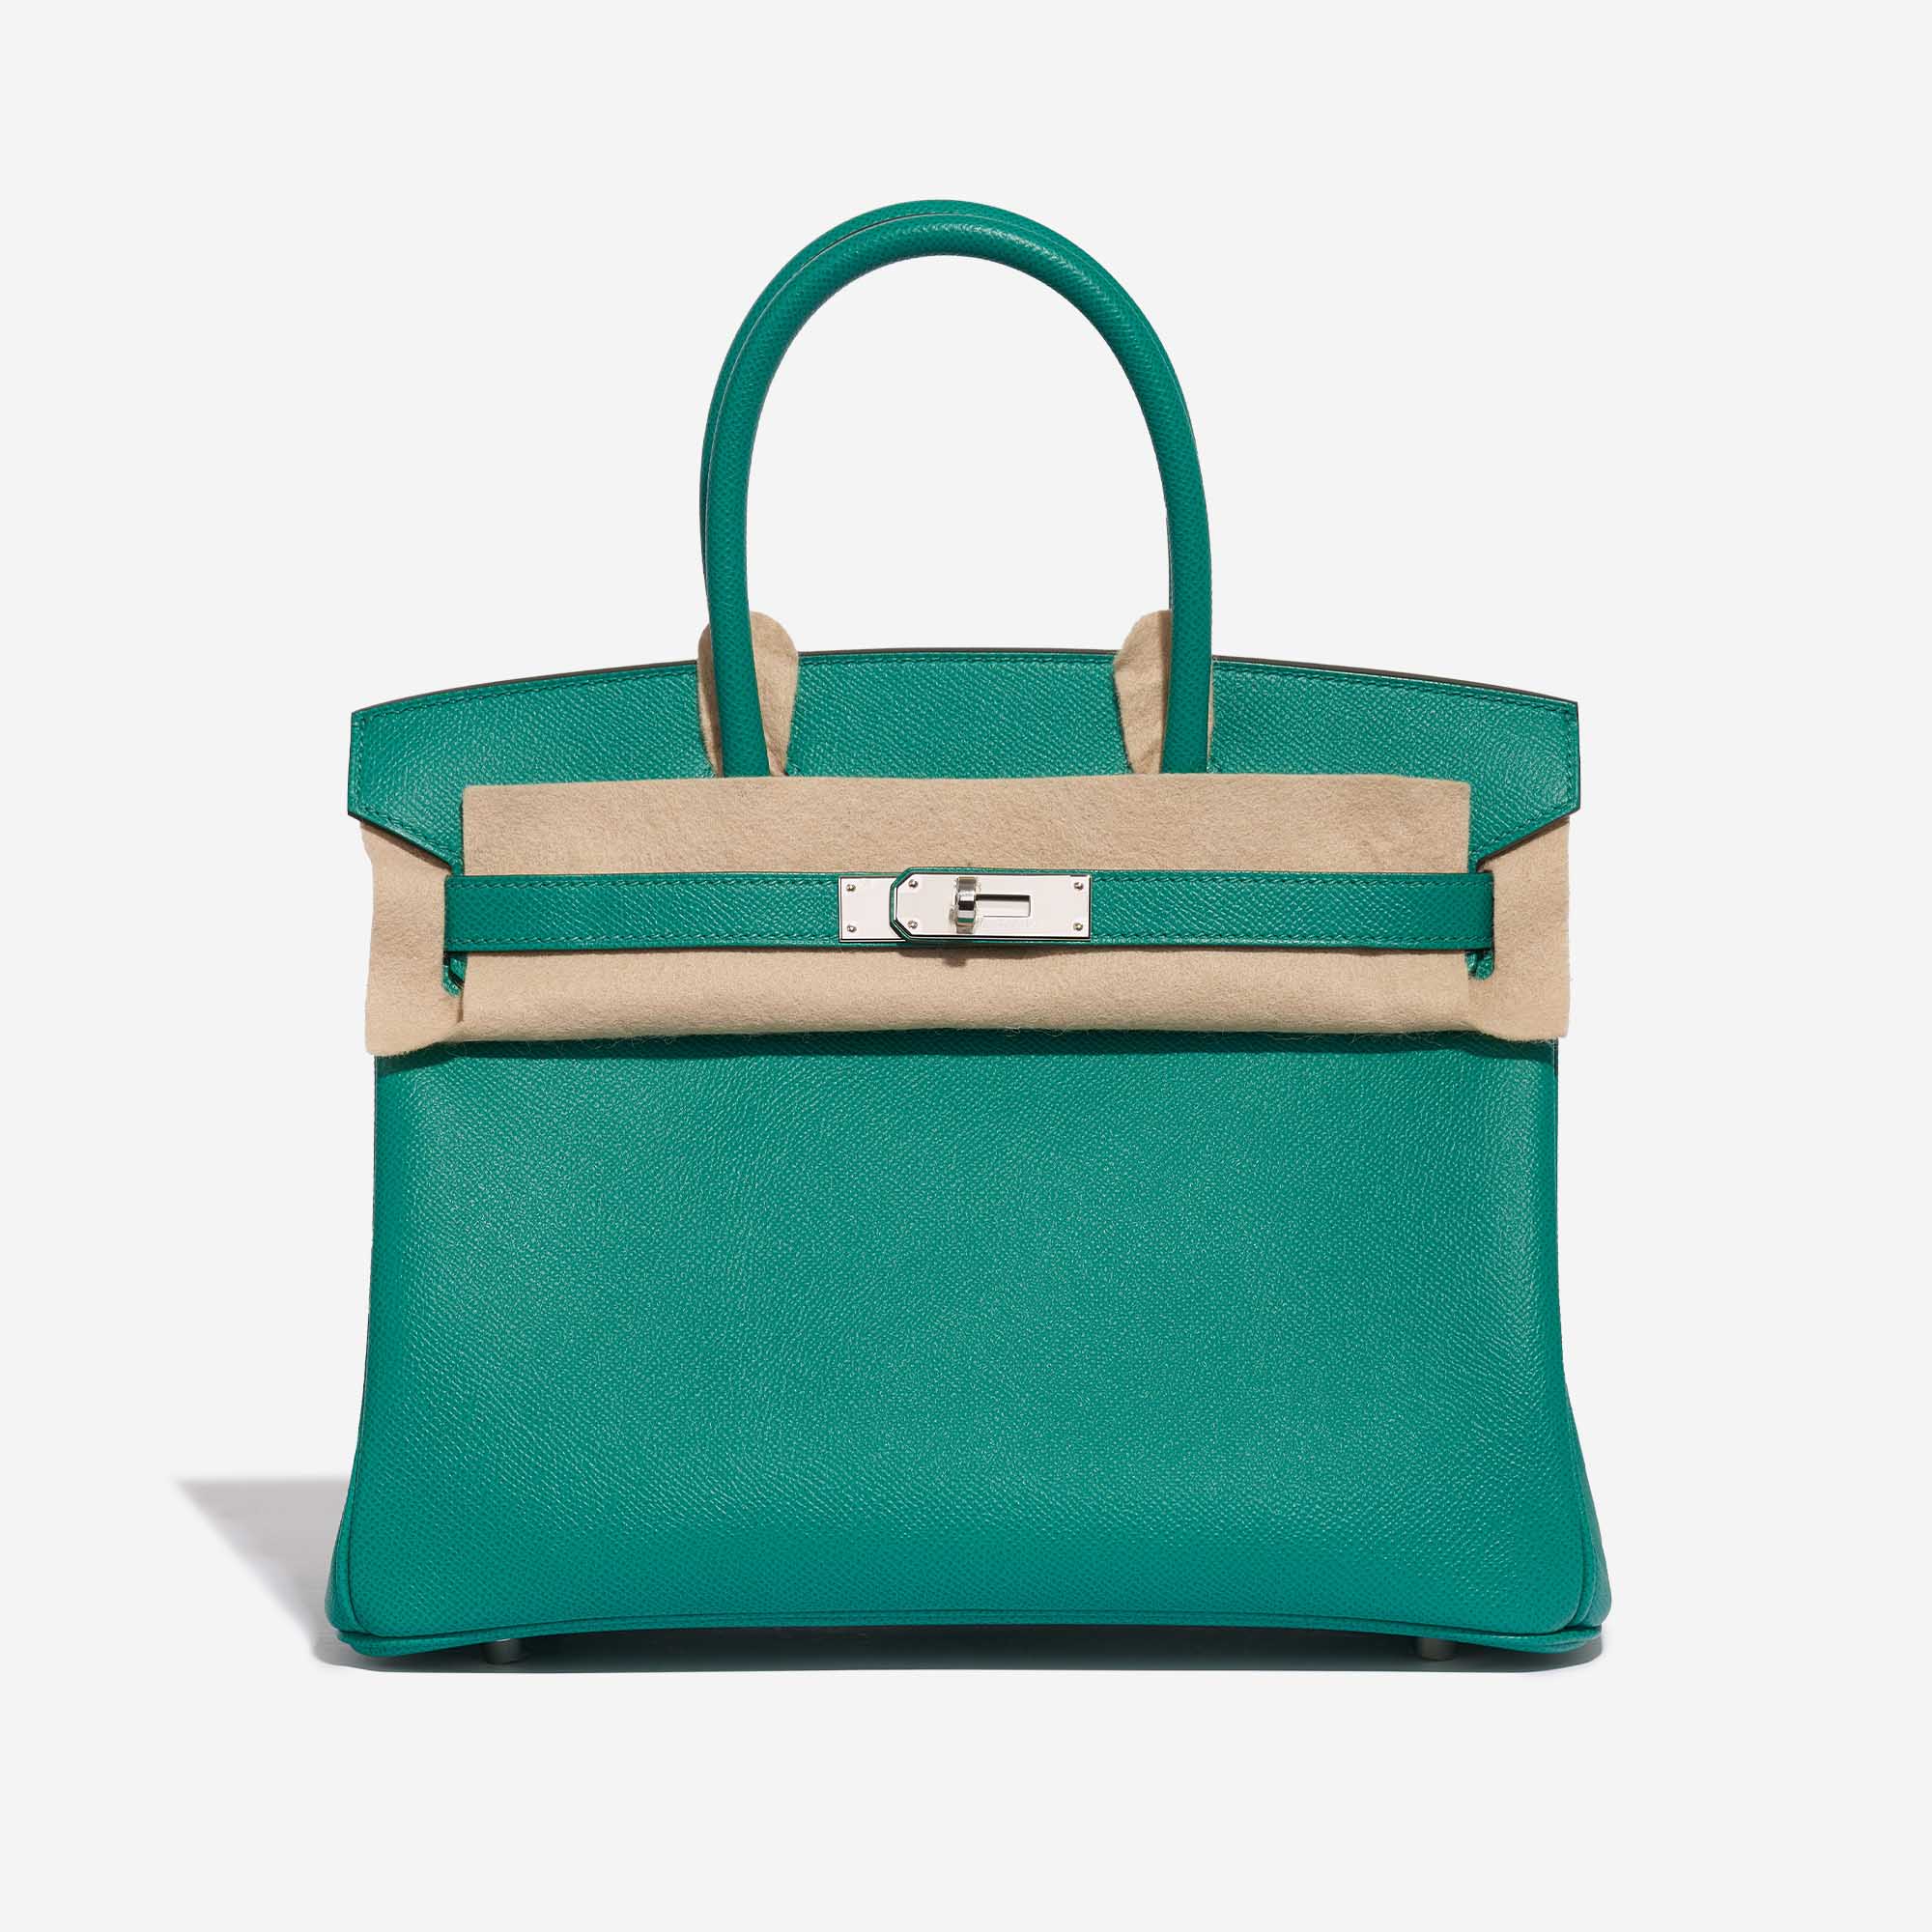 Sac Hermès d'occasion Birkin 30 Epsom Vert Jade Green Front Velt | Vendez votre sac de créateur sur Saclab.com